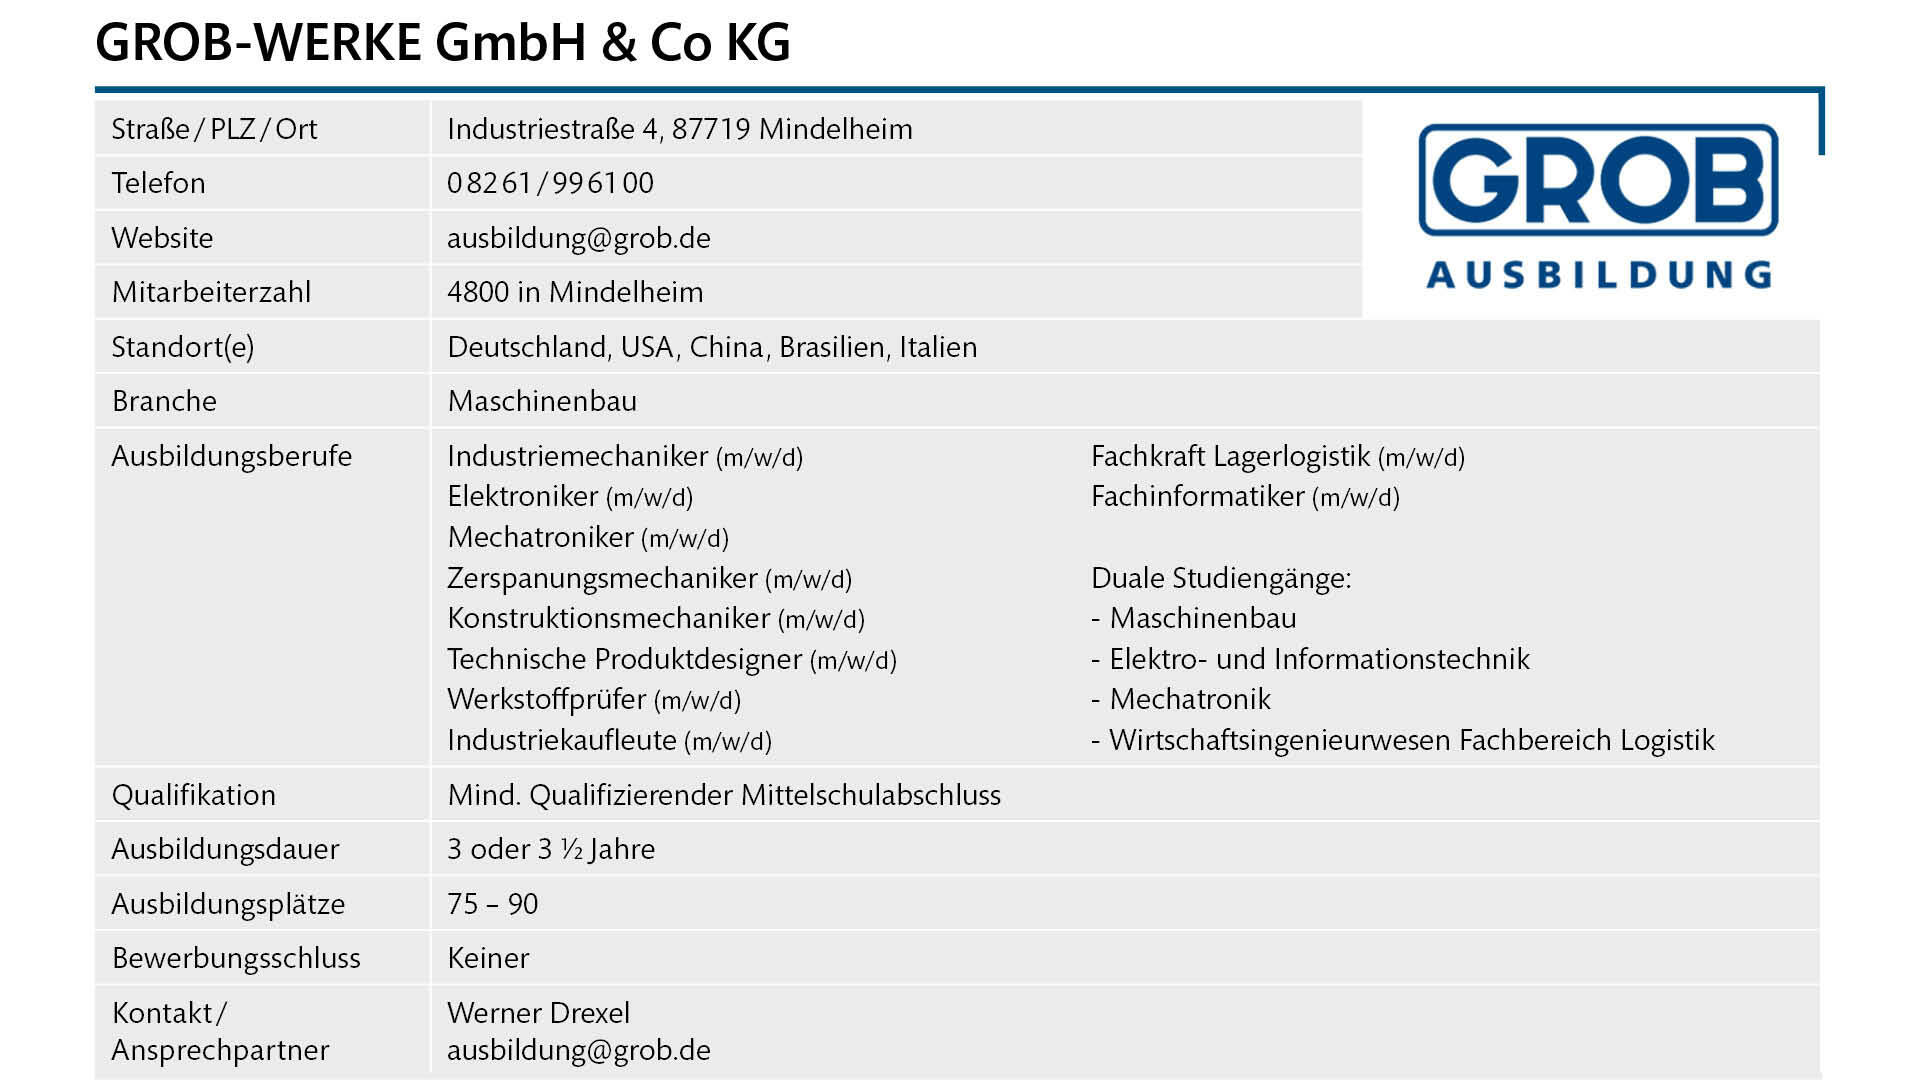 Steckbrief GROB-WERKE GmbH & Co. KG